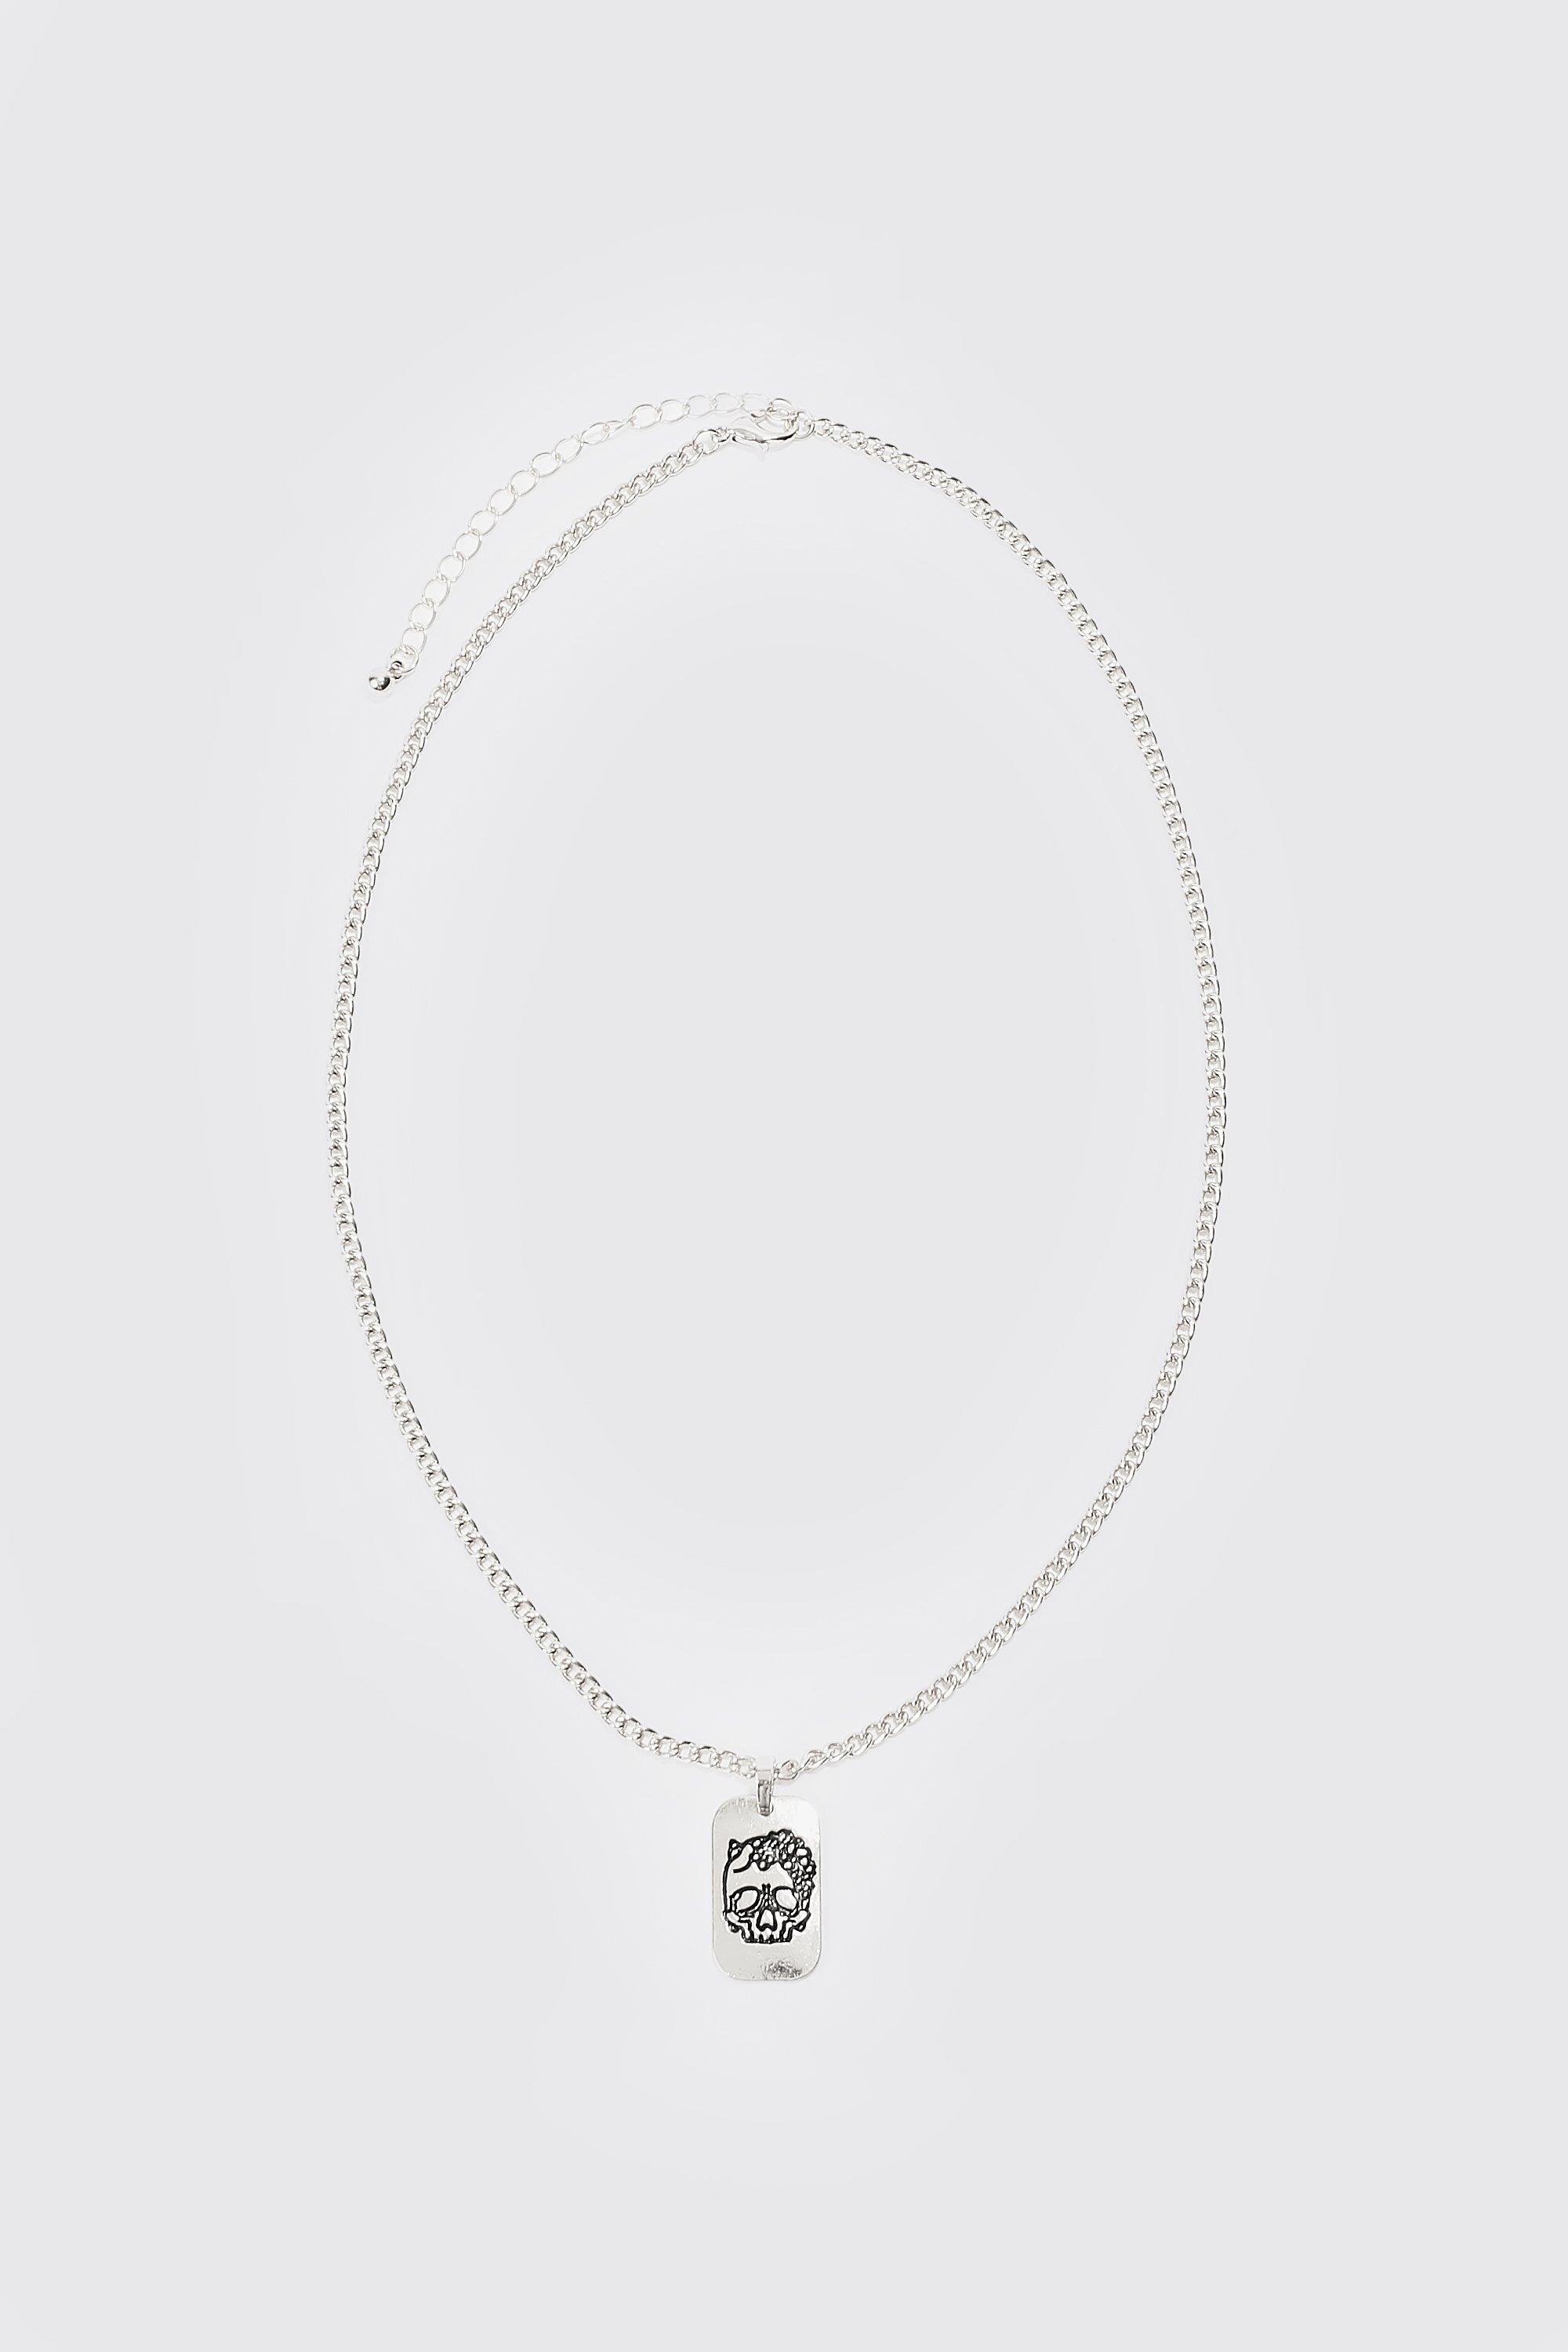 Louis Vuitton Necklace Lv Friend Pendant Dragon Metal White System